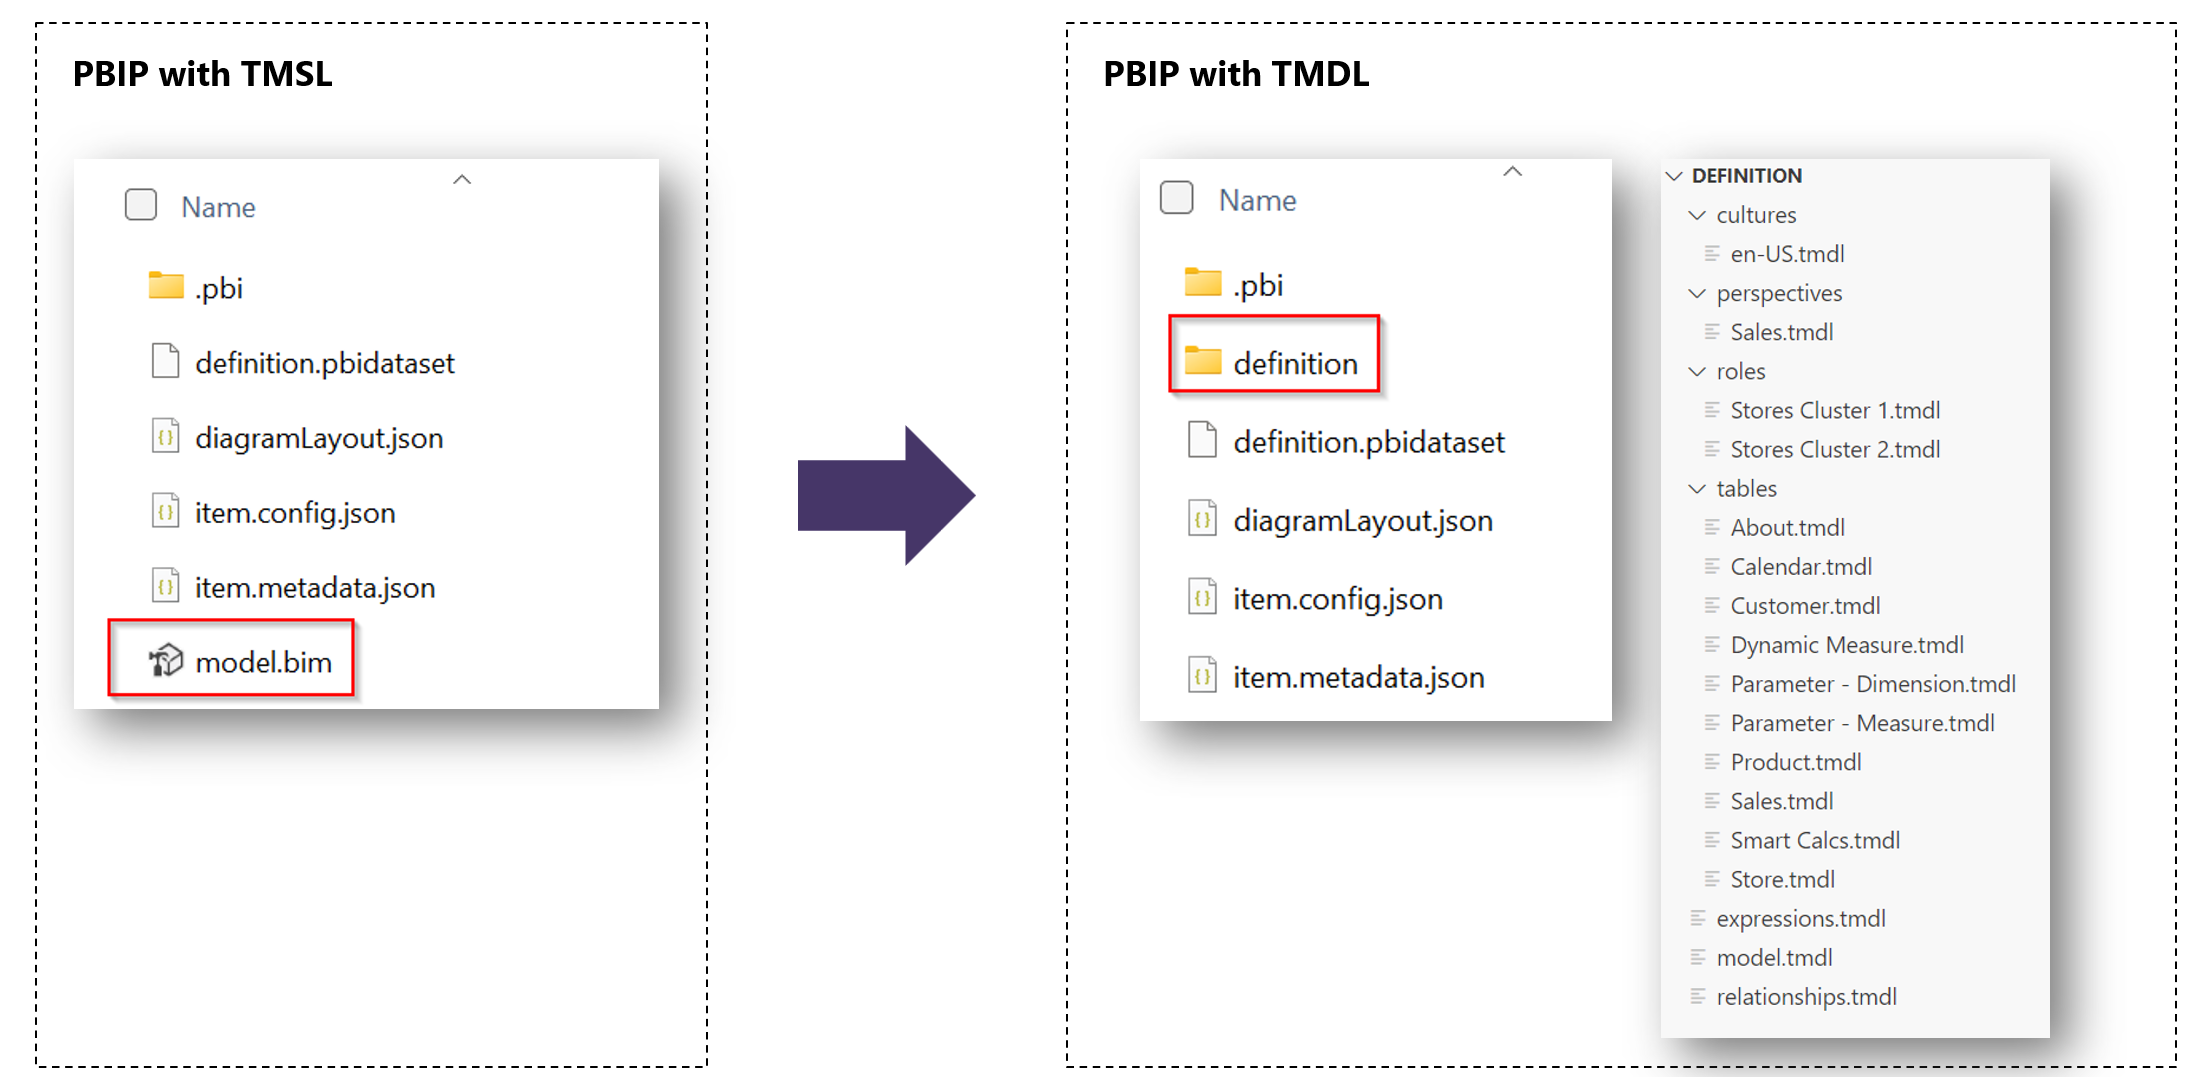 Captura de tela de projetos PBIP com pastas TMSL e pastas TMDL.